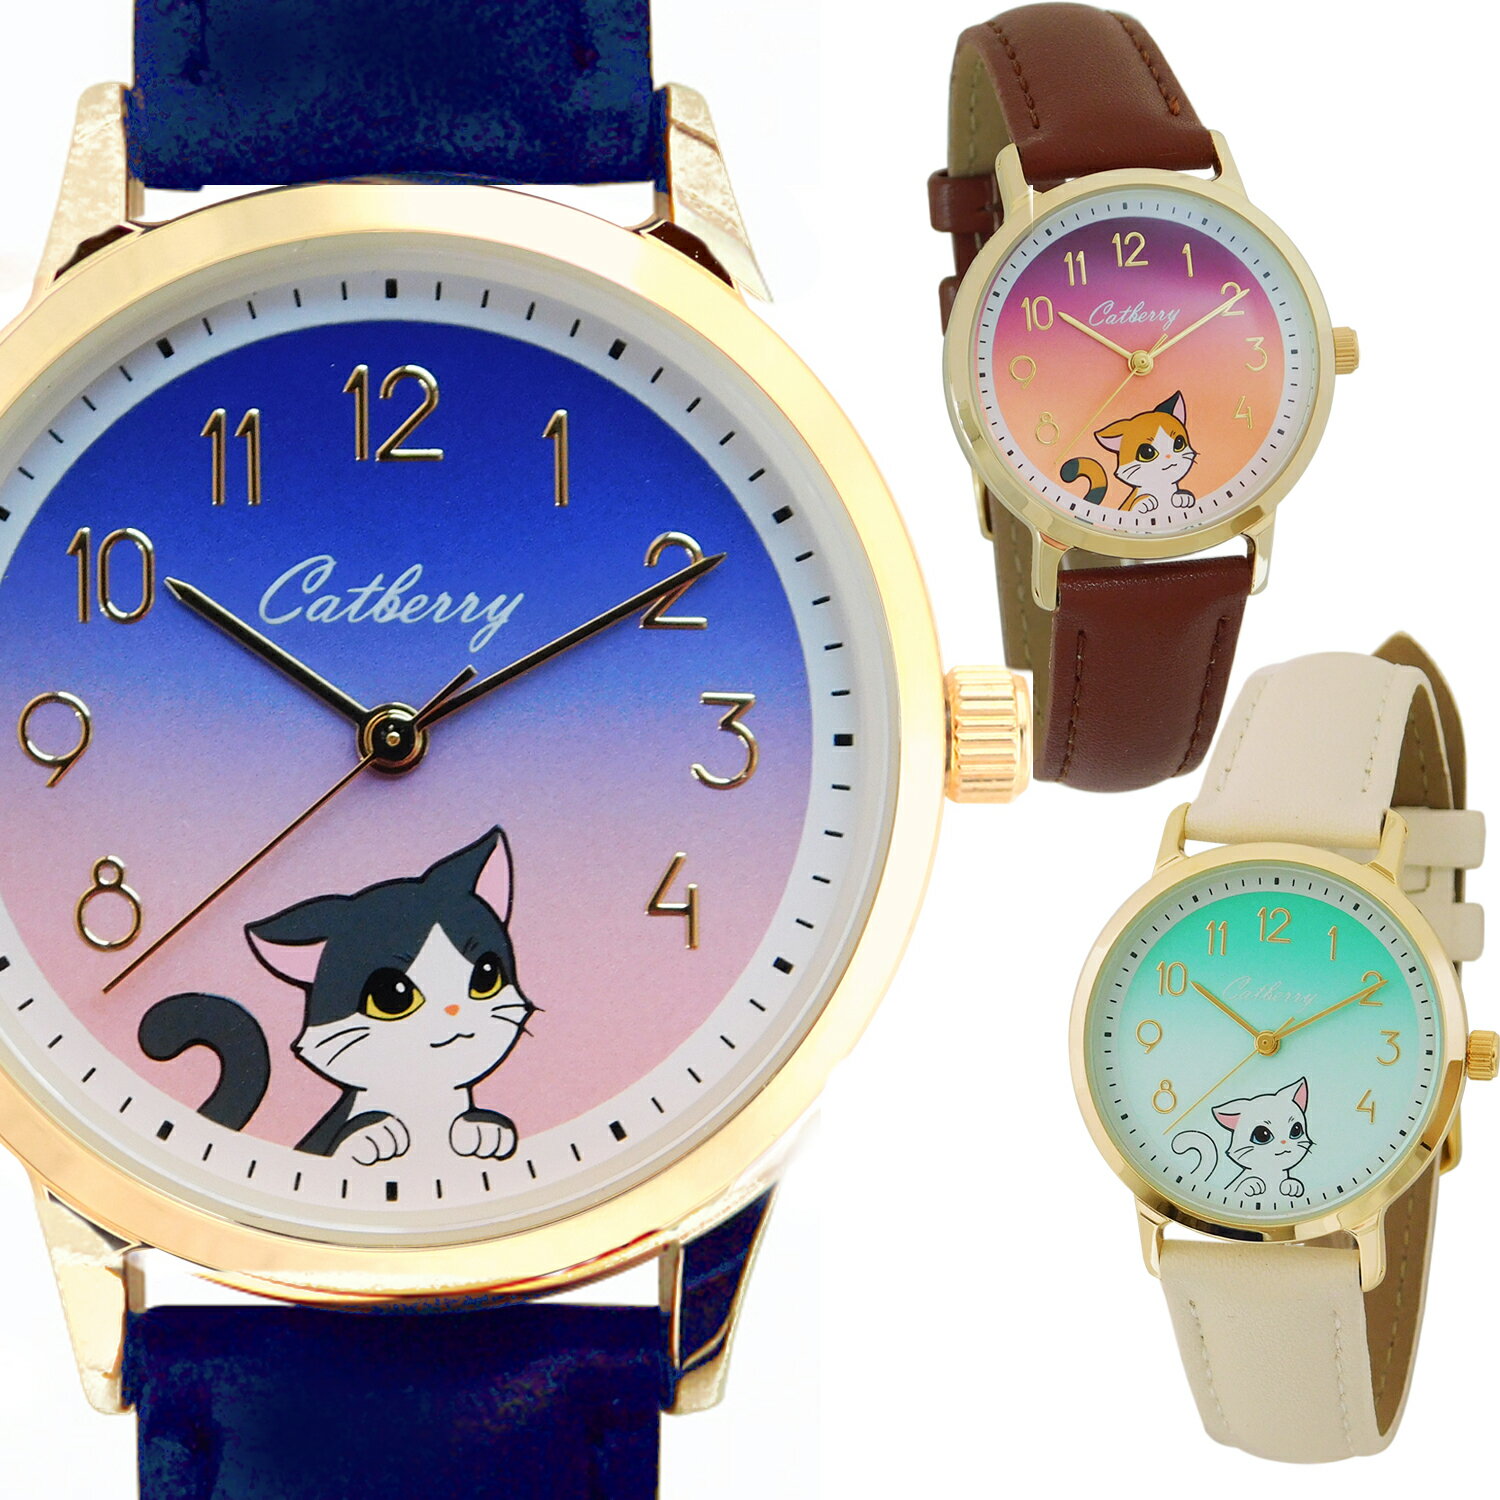 安い猫 腕時計の通販商品を比較 | ショッピング情報のオークファン